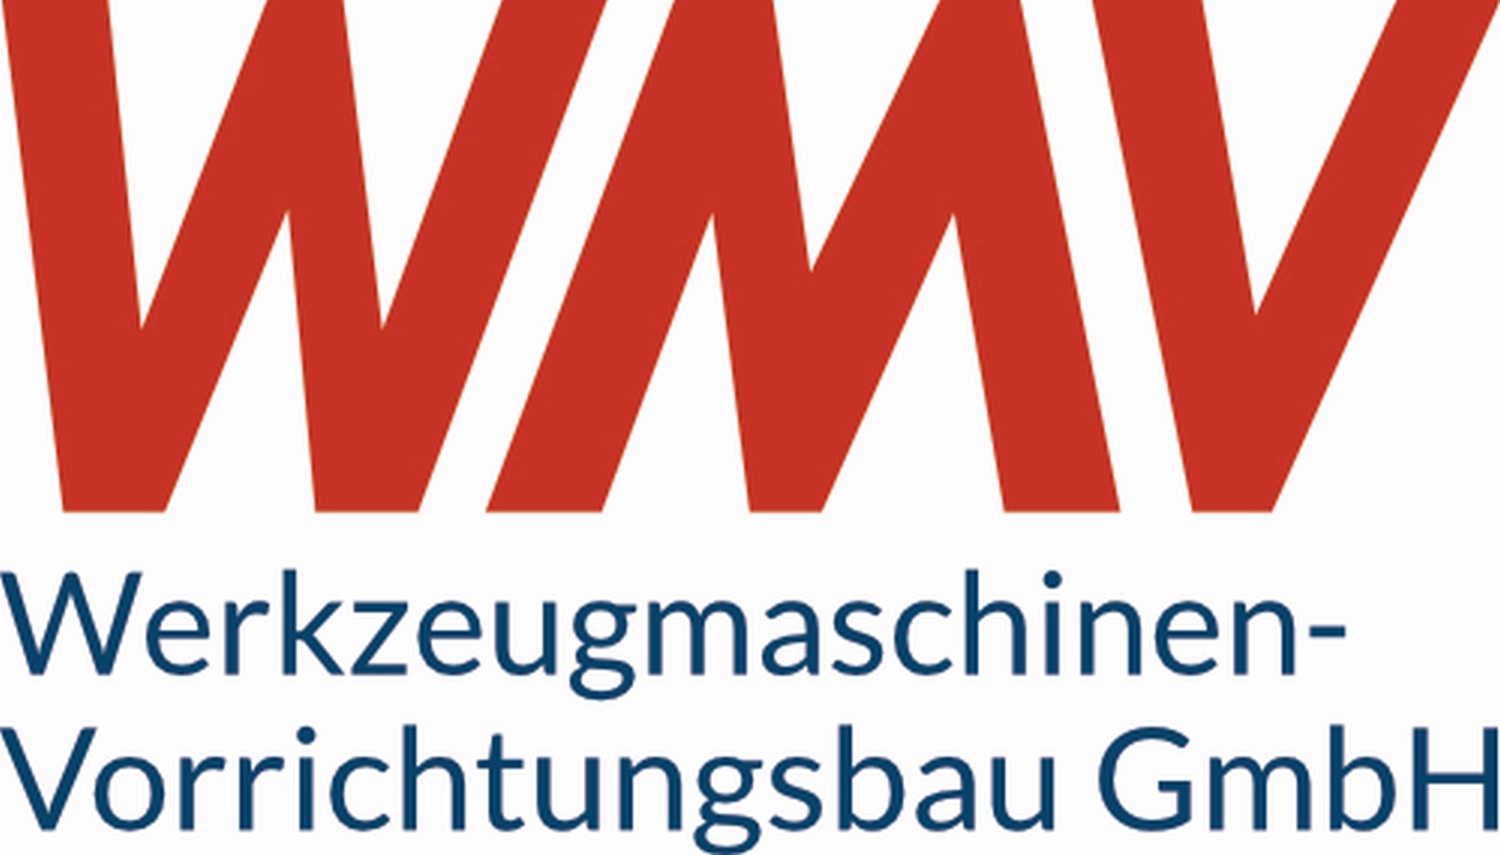 WMV logo